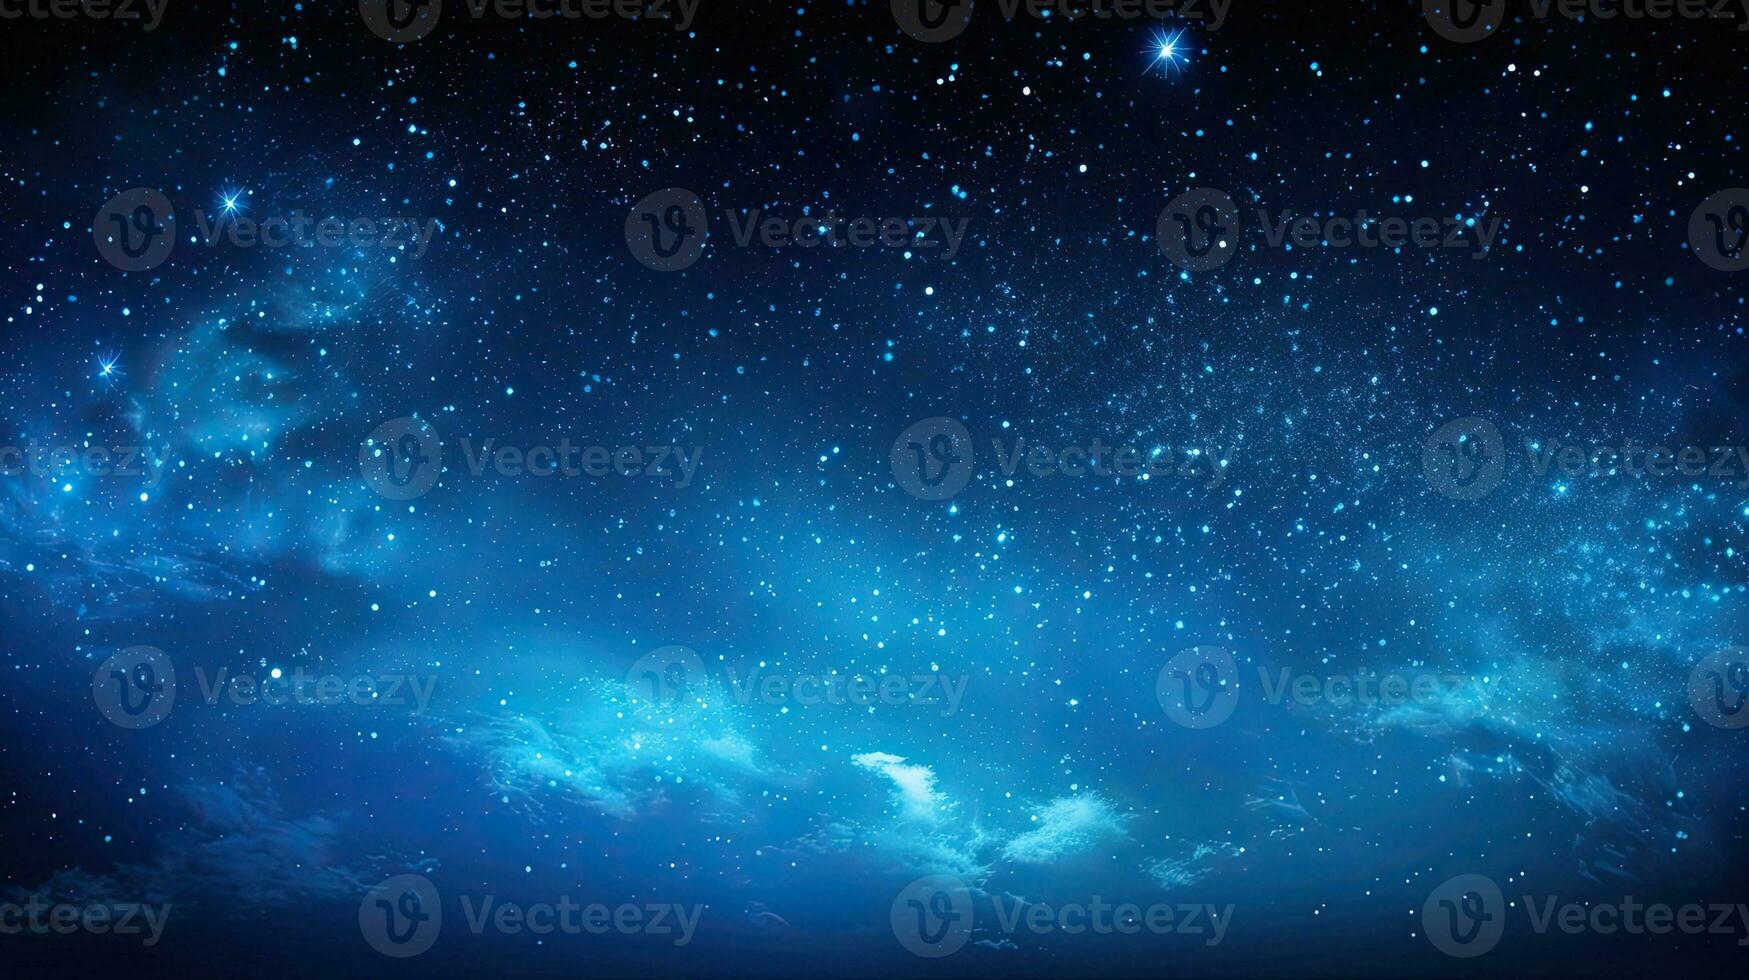 erstaunlich lange Exposition Foto von ein Universum gefüllt mit Sterne Galaxien und Nebel mit fesselnd wählen Weiß Balance und Fokus